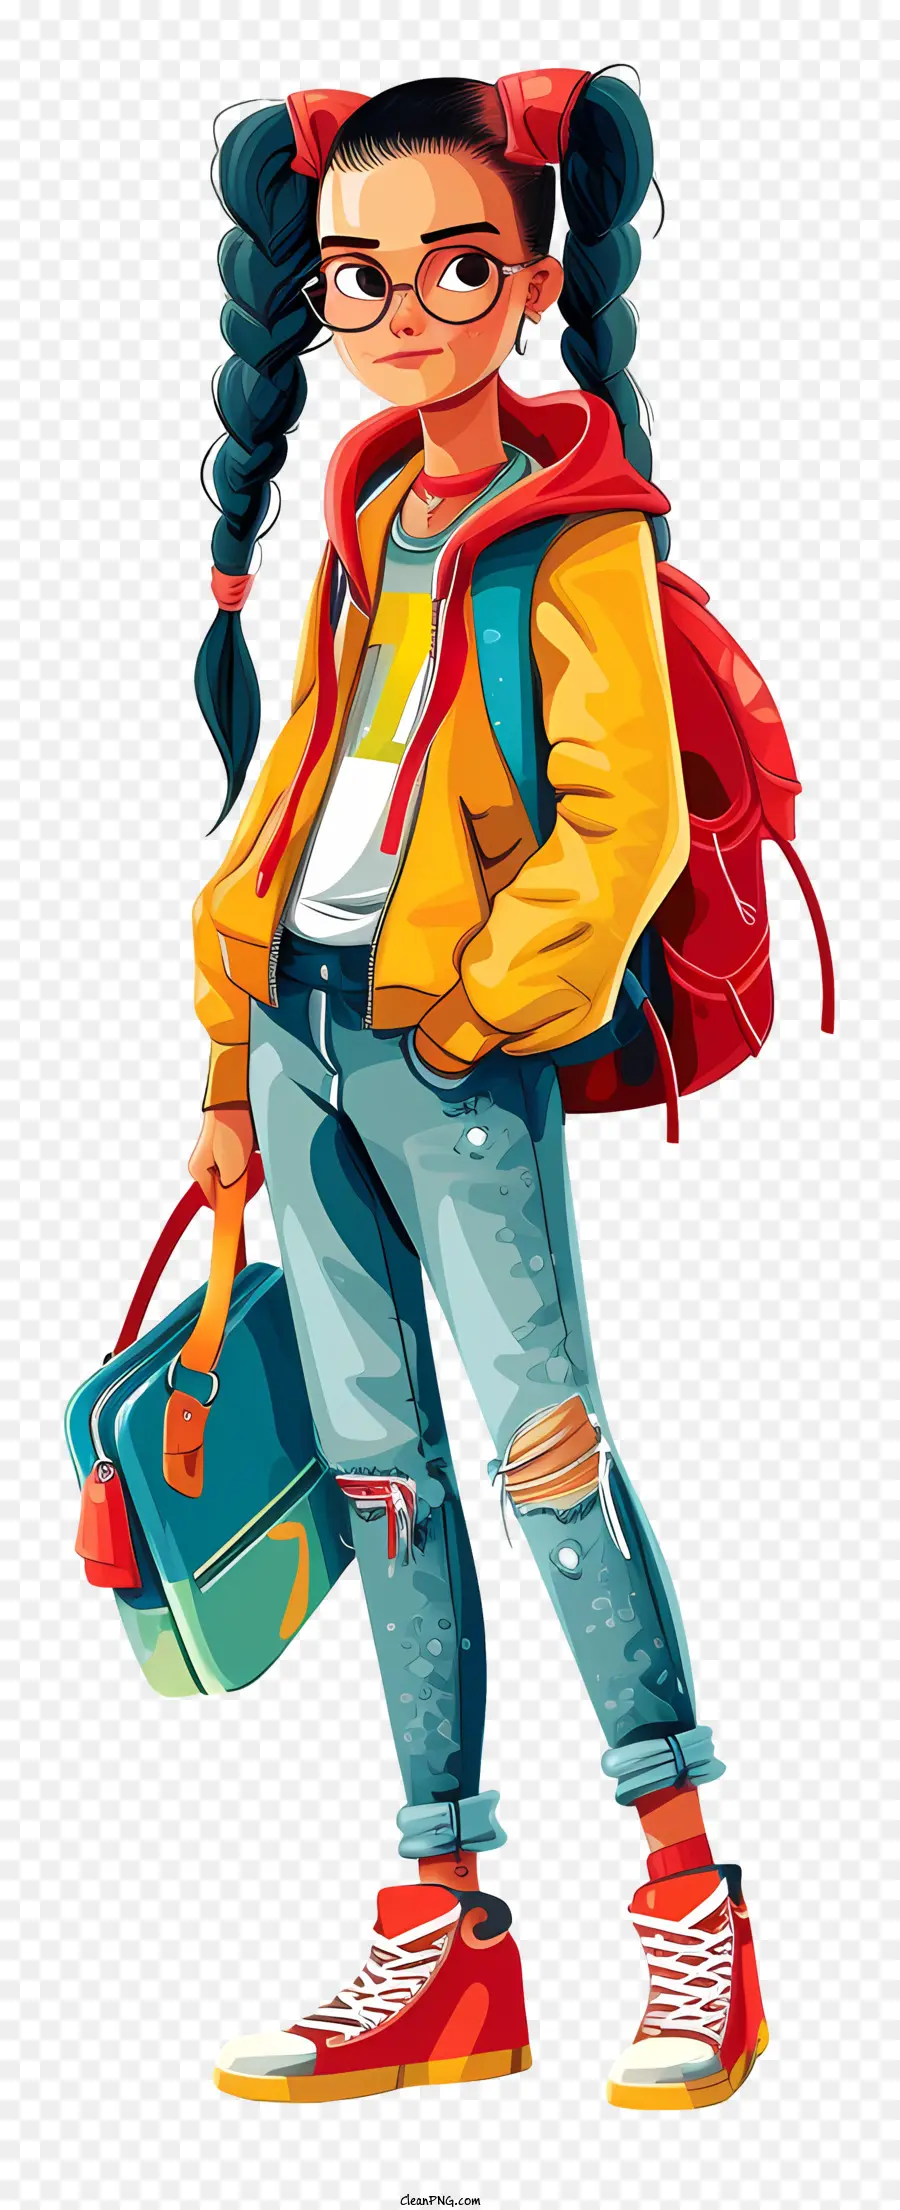 đeo kính - Cô gái trẻ trong chiếc áo khoác đầy màu sắc đi bộ trên đường phố thành phố